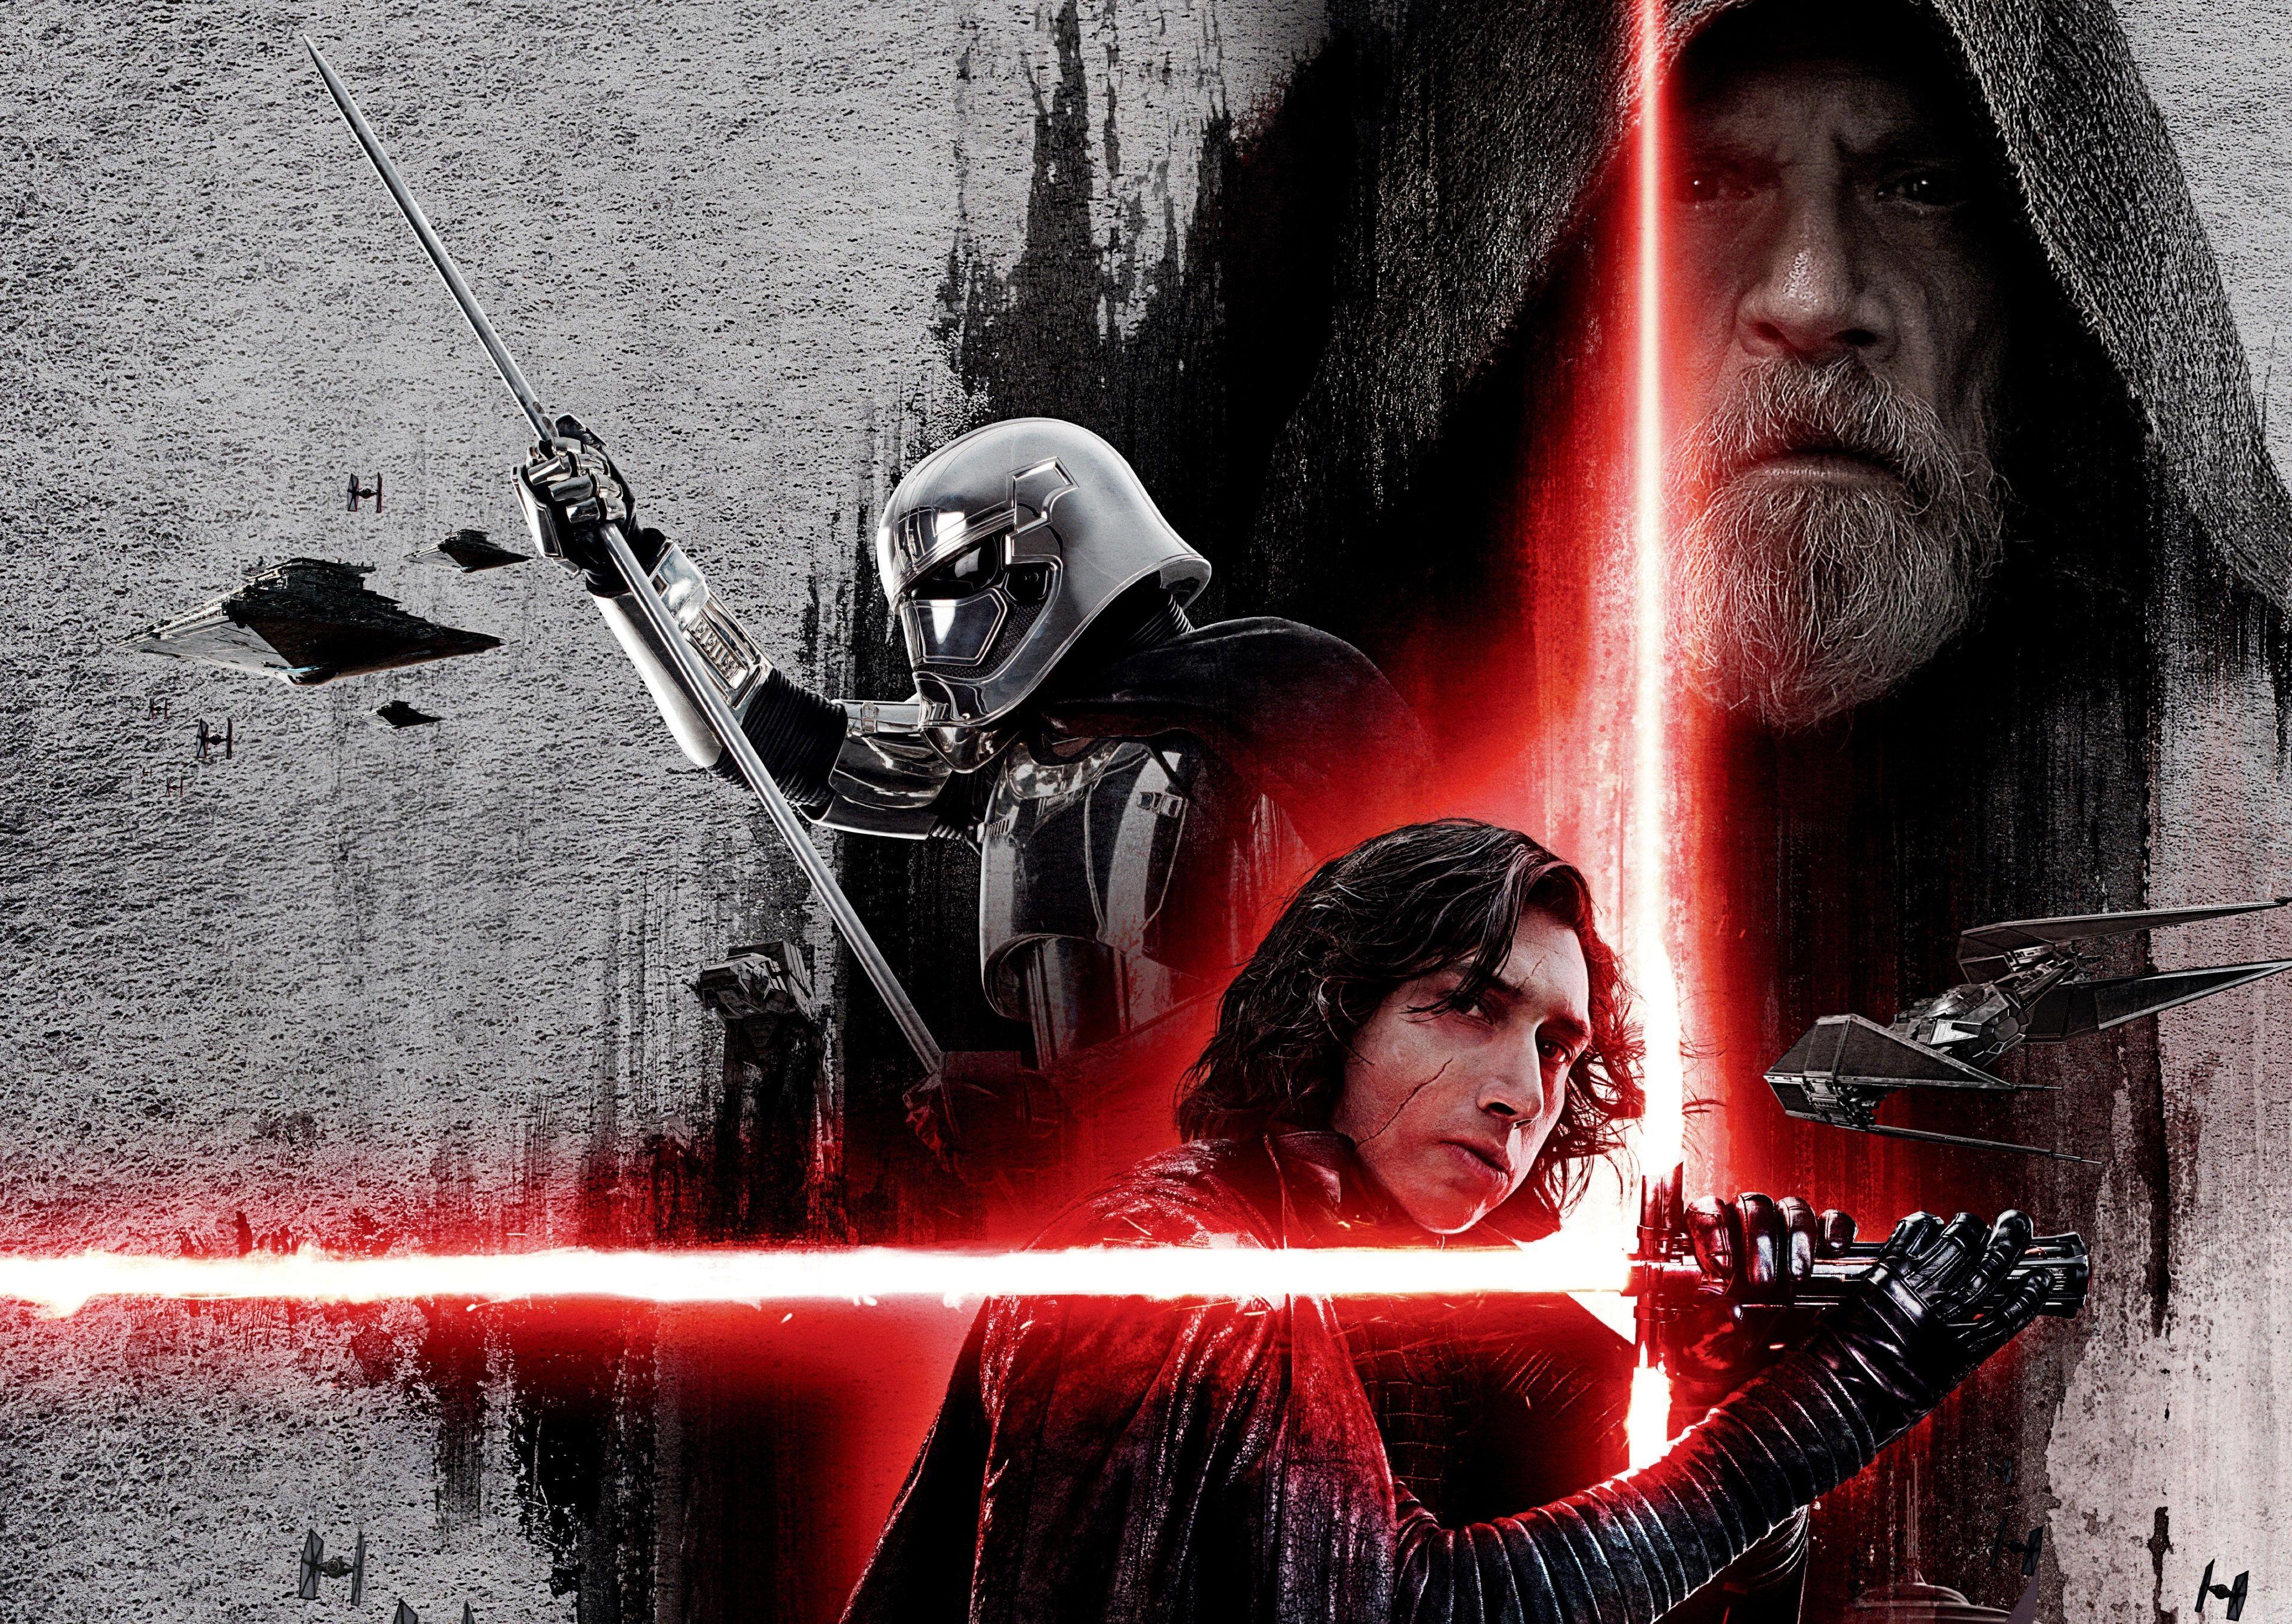 4K Star Wars The Last Jedi wallpaper #starwars. Star Wars